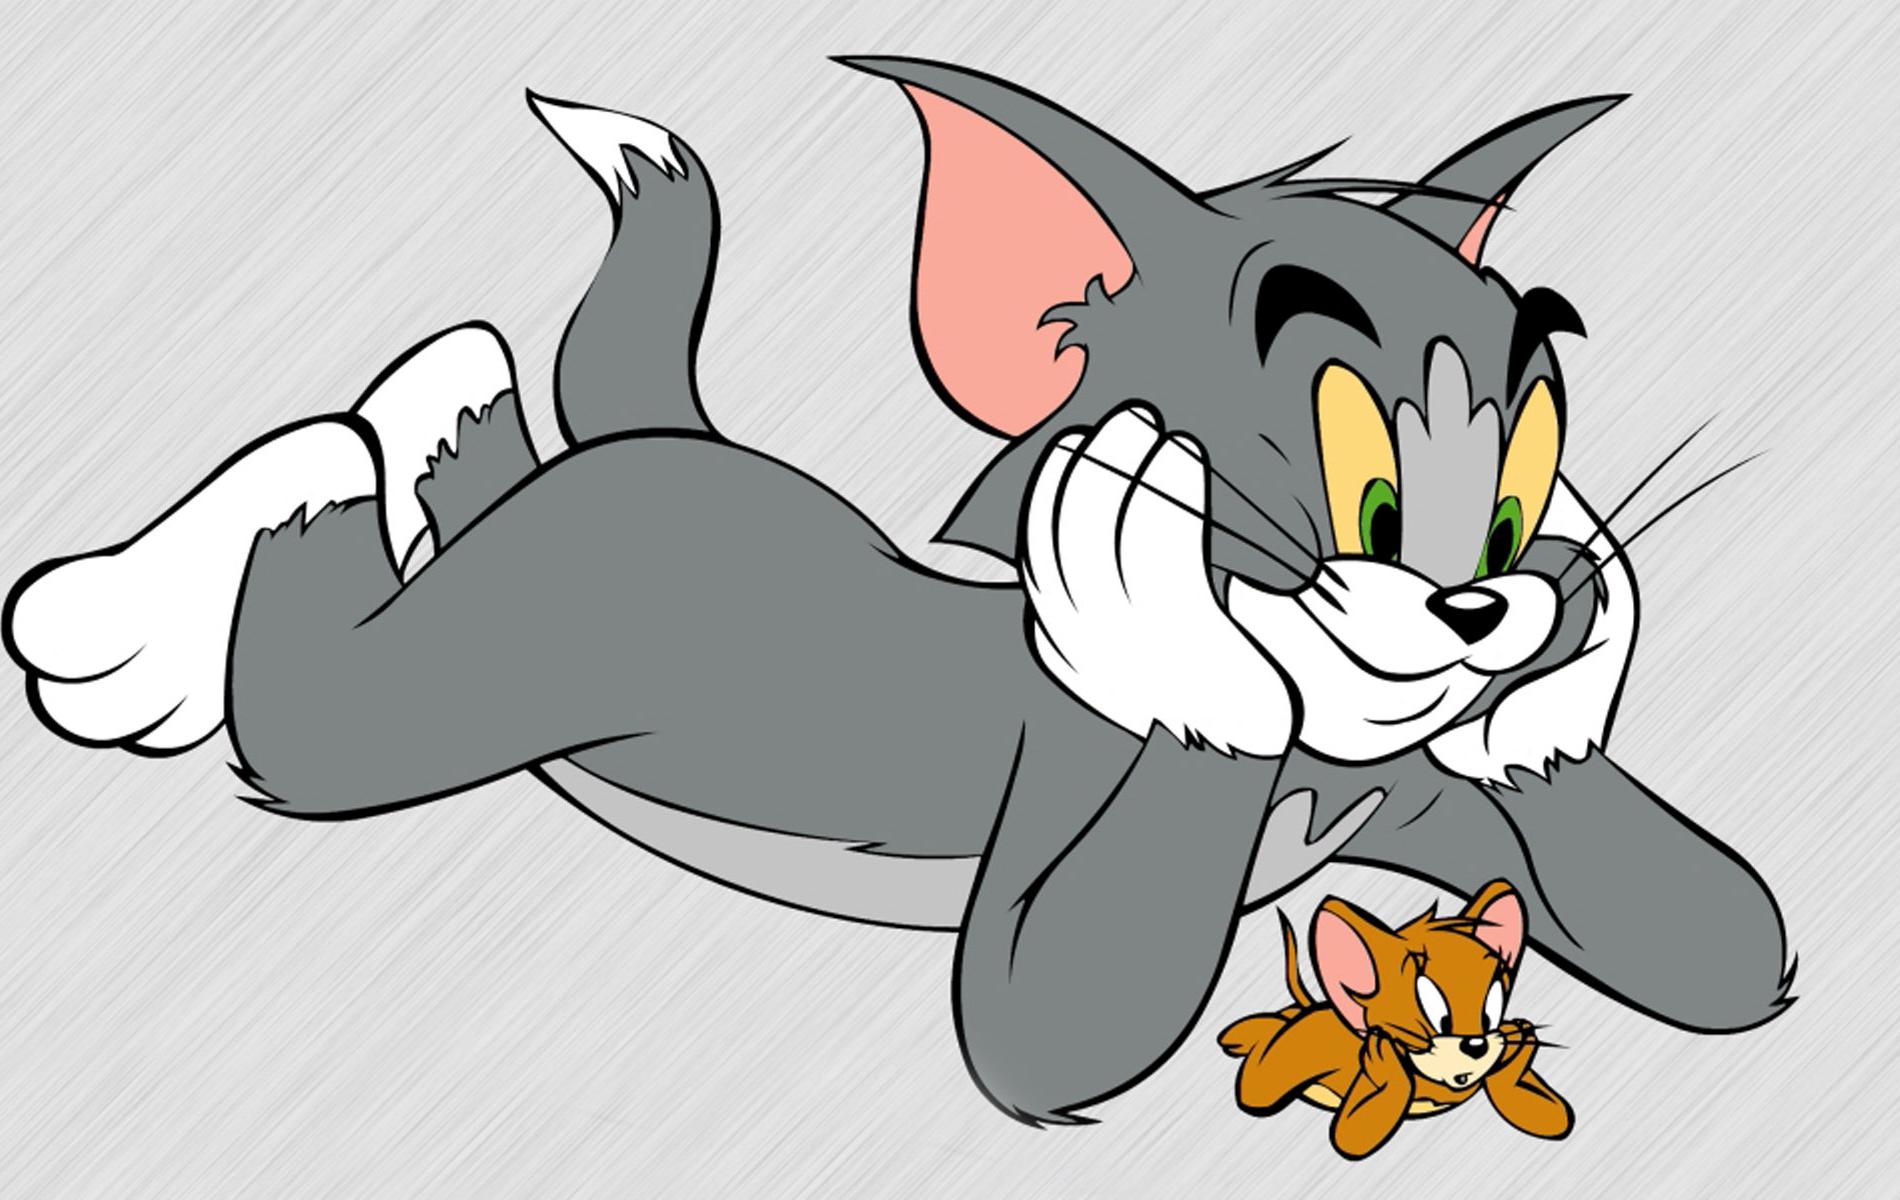 Tuy luôn truy đuổi nhau thế nhưng có lúc Tom & Jerry lại có lúc tình cảm như vậy